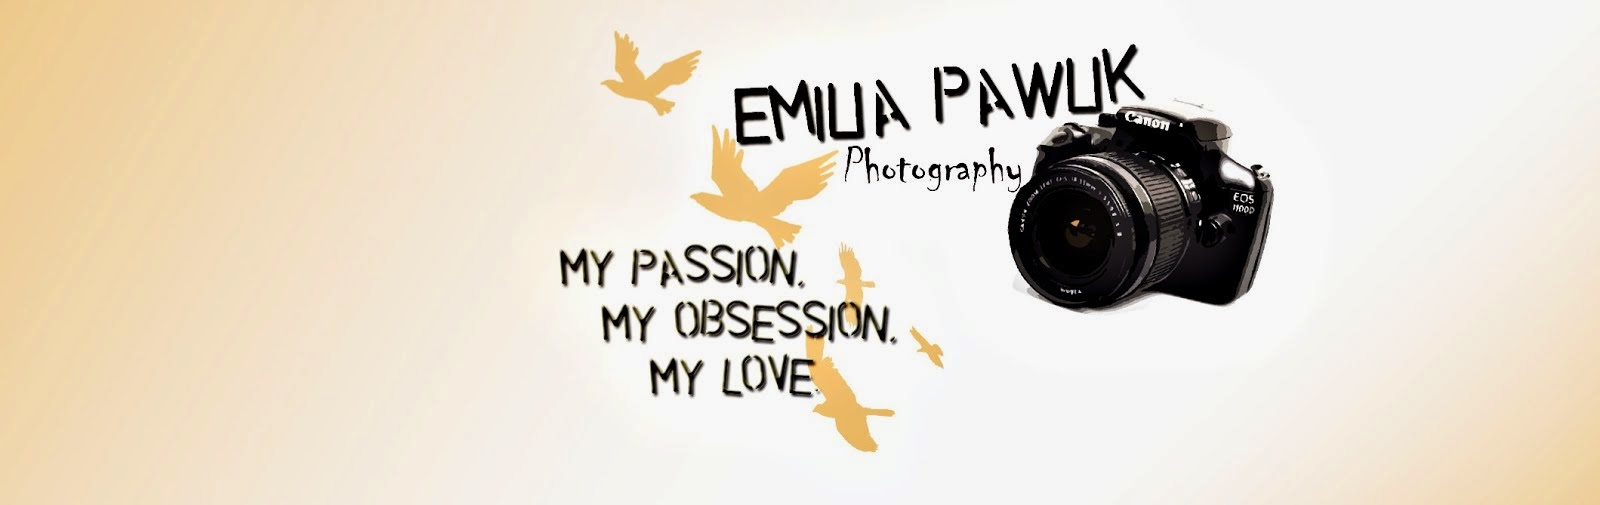 Emi Pawlik Photography